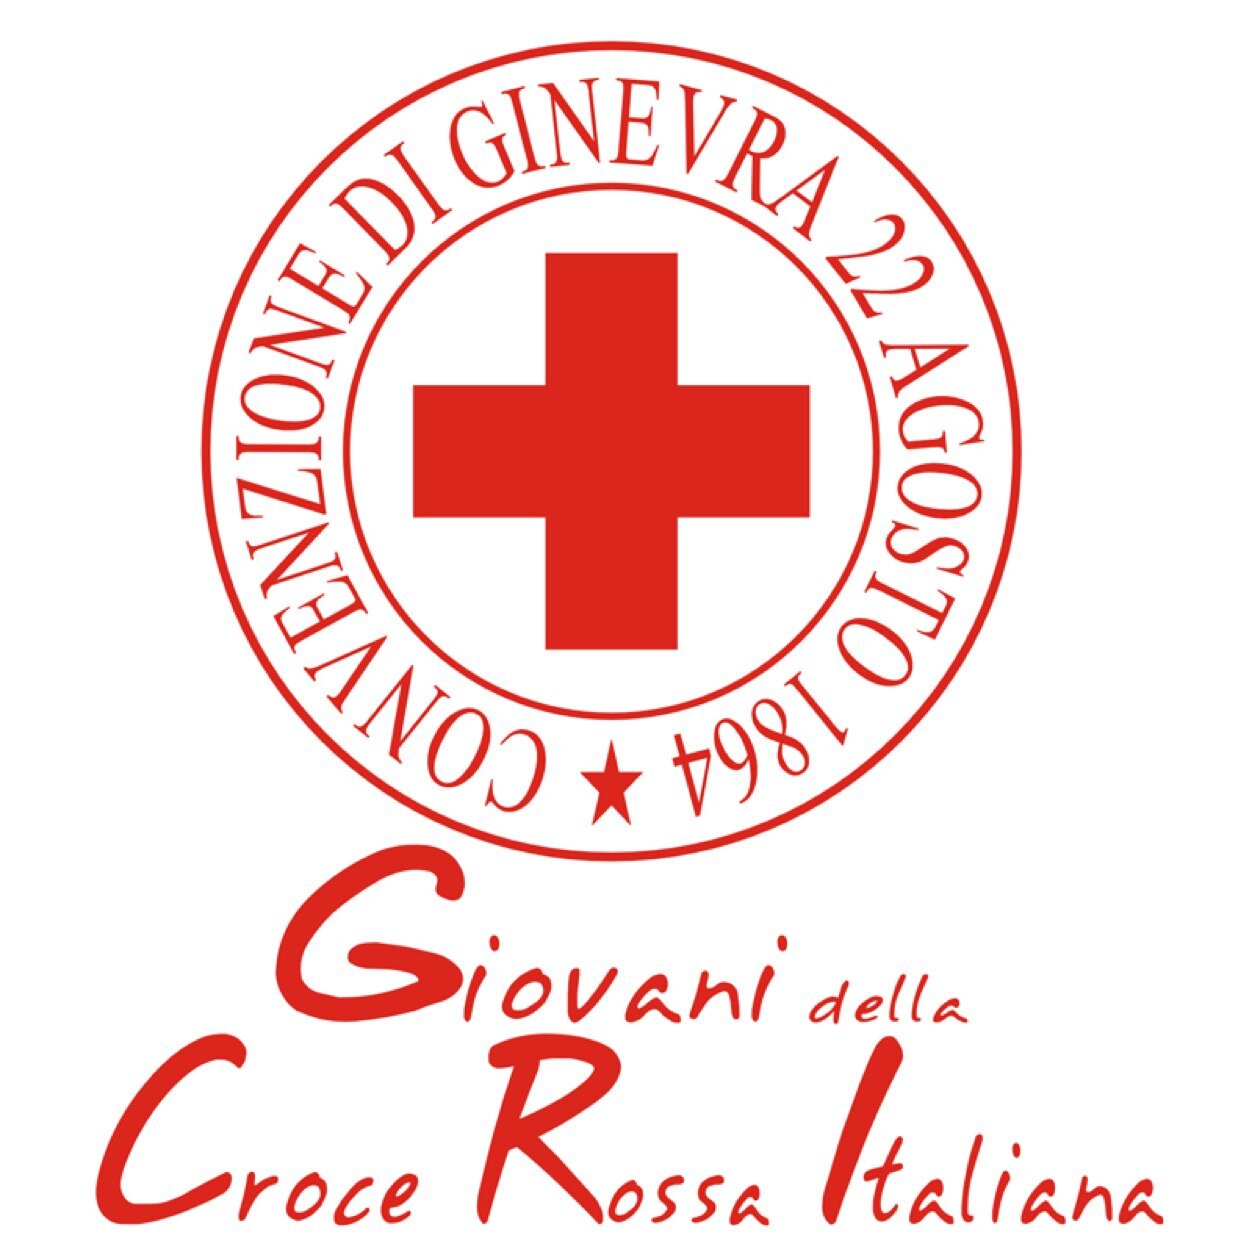 Profilo Twitter ufficiale dei Giovani della Croce Rossa Italiana, Comitato Locale di Selvazzano Dentro PD